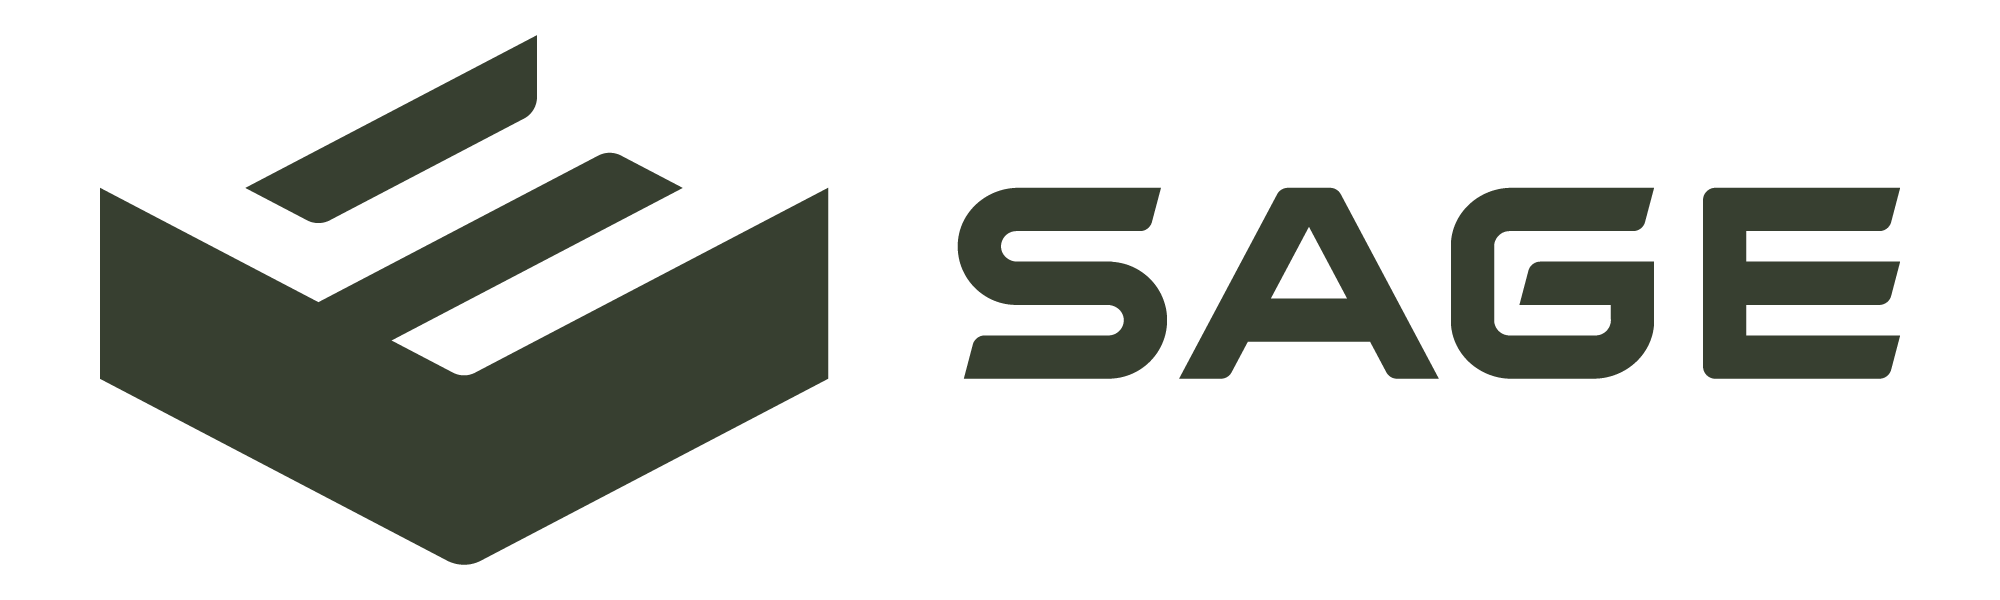 Sage Builder Group, Inc. Logo